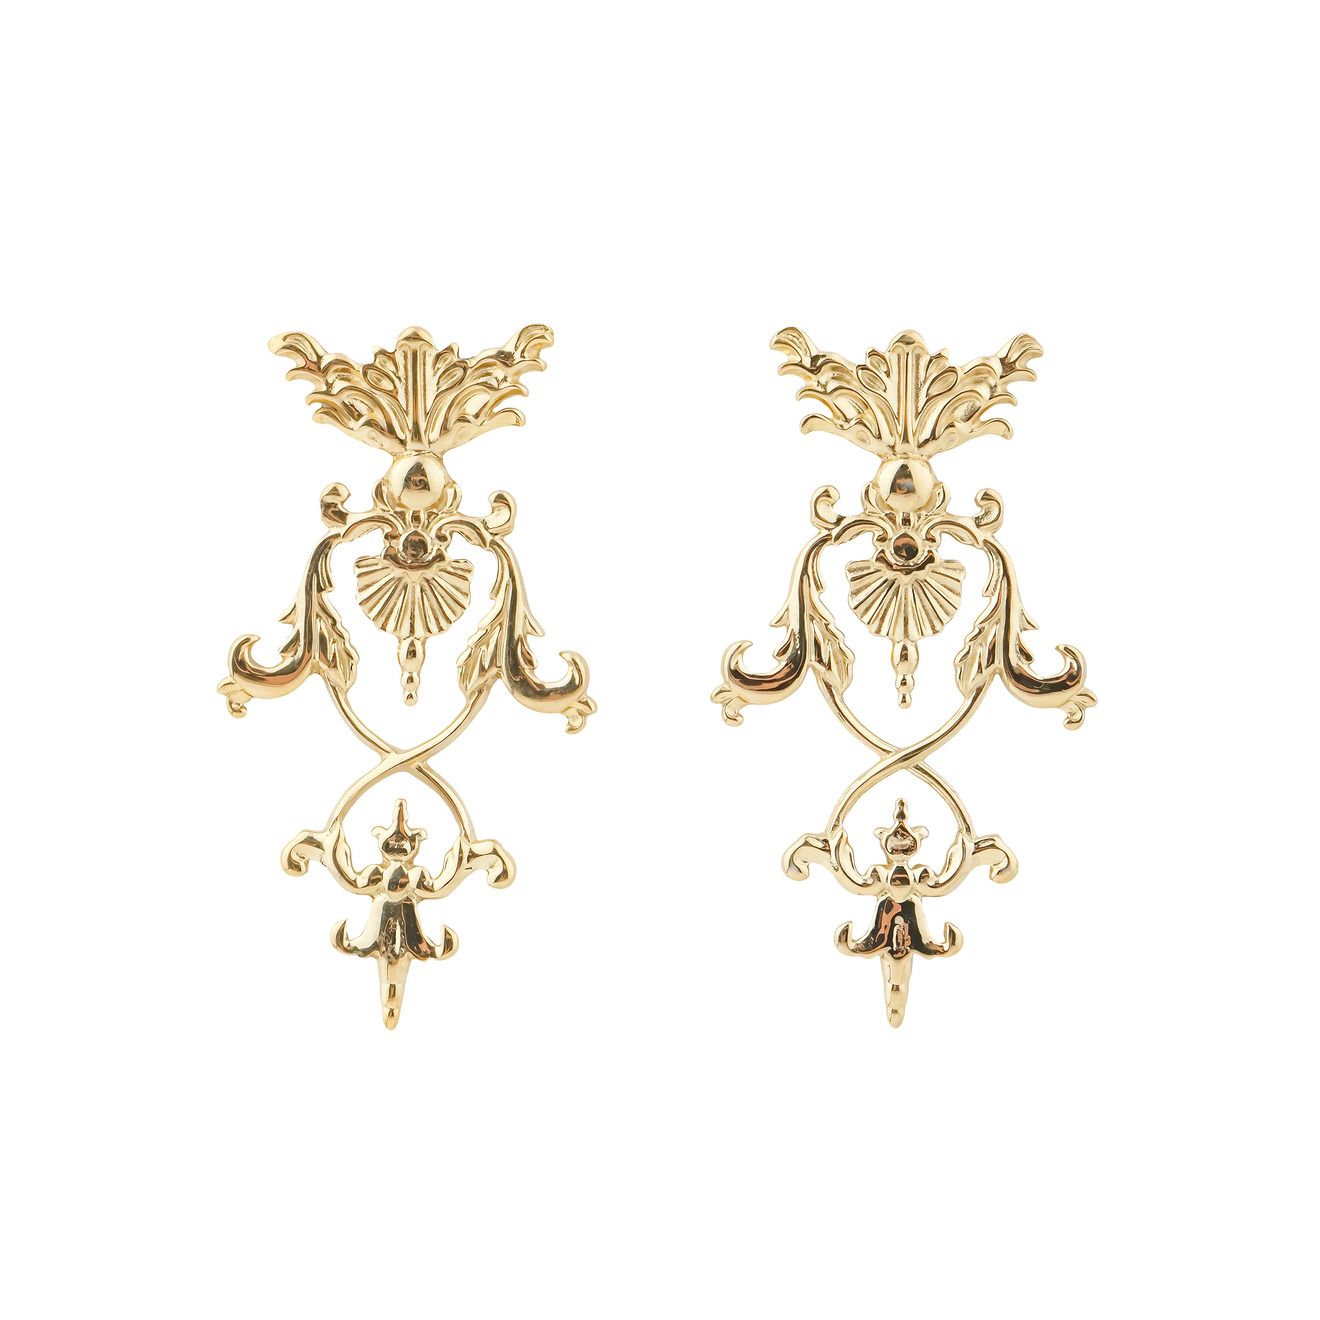 LUTA Jewelry Позолоченные серебряные серьги в барочном стиле luta jewelry серьги в барочном стиле из серебра